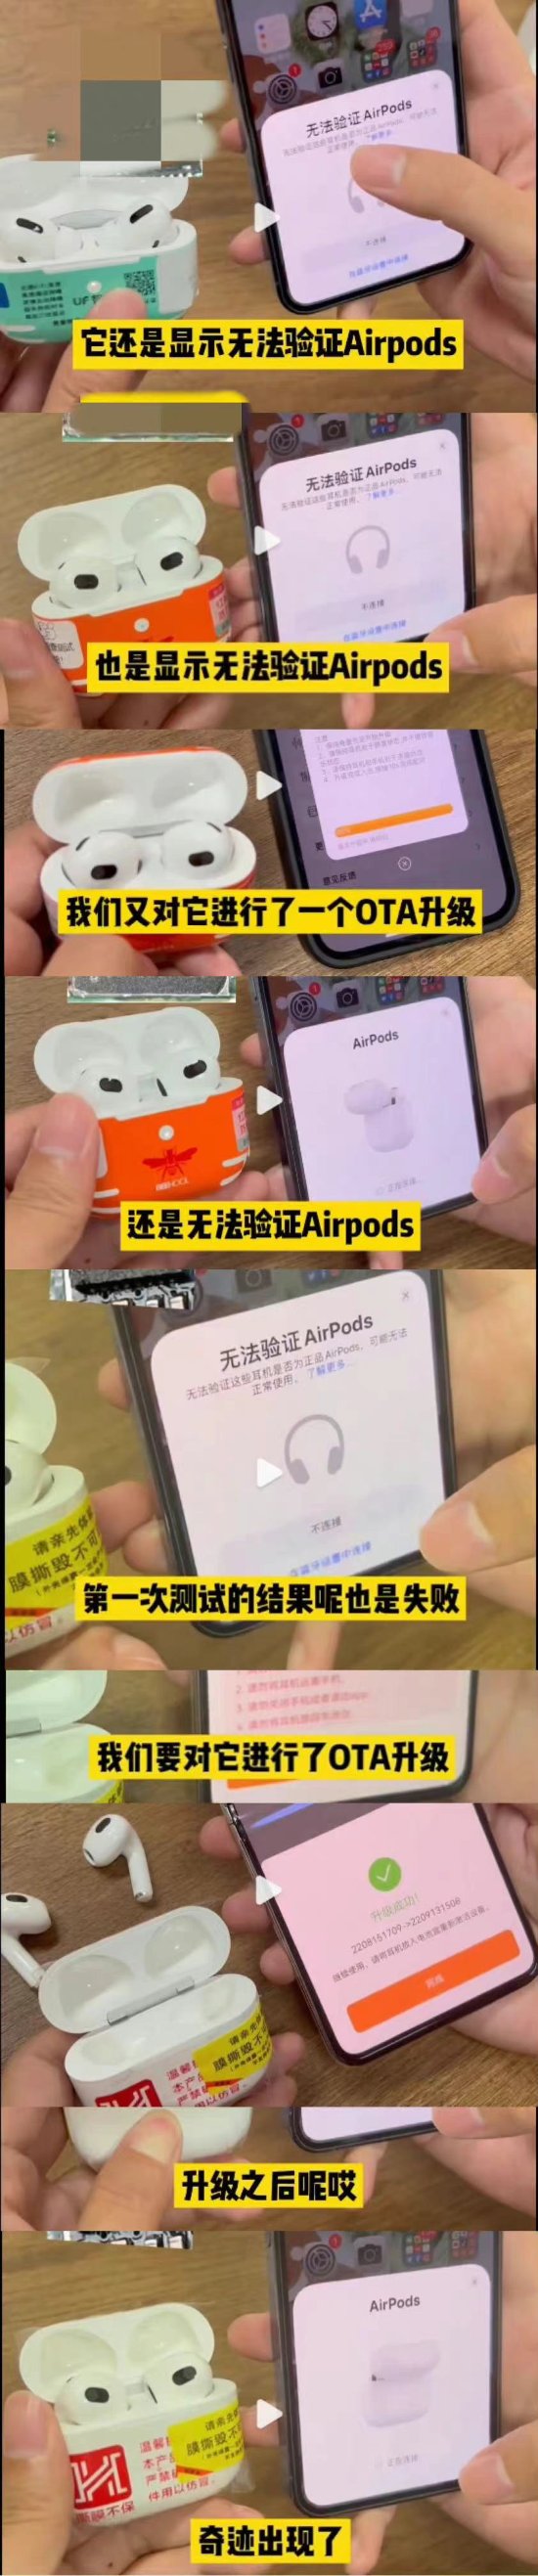 华强北AirPods破解iOS16盗版检测 可绕过苹果假冒耳机提示